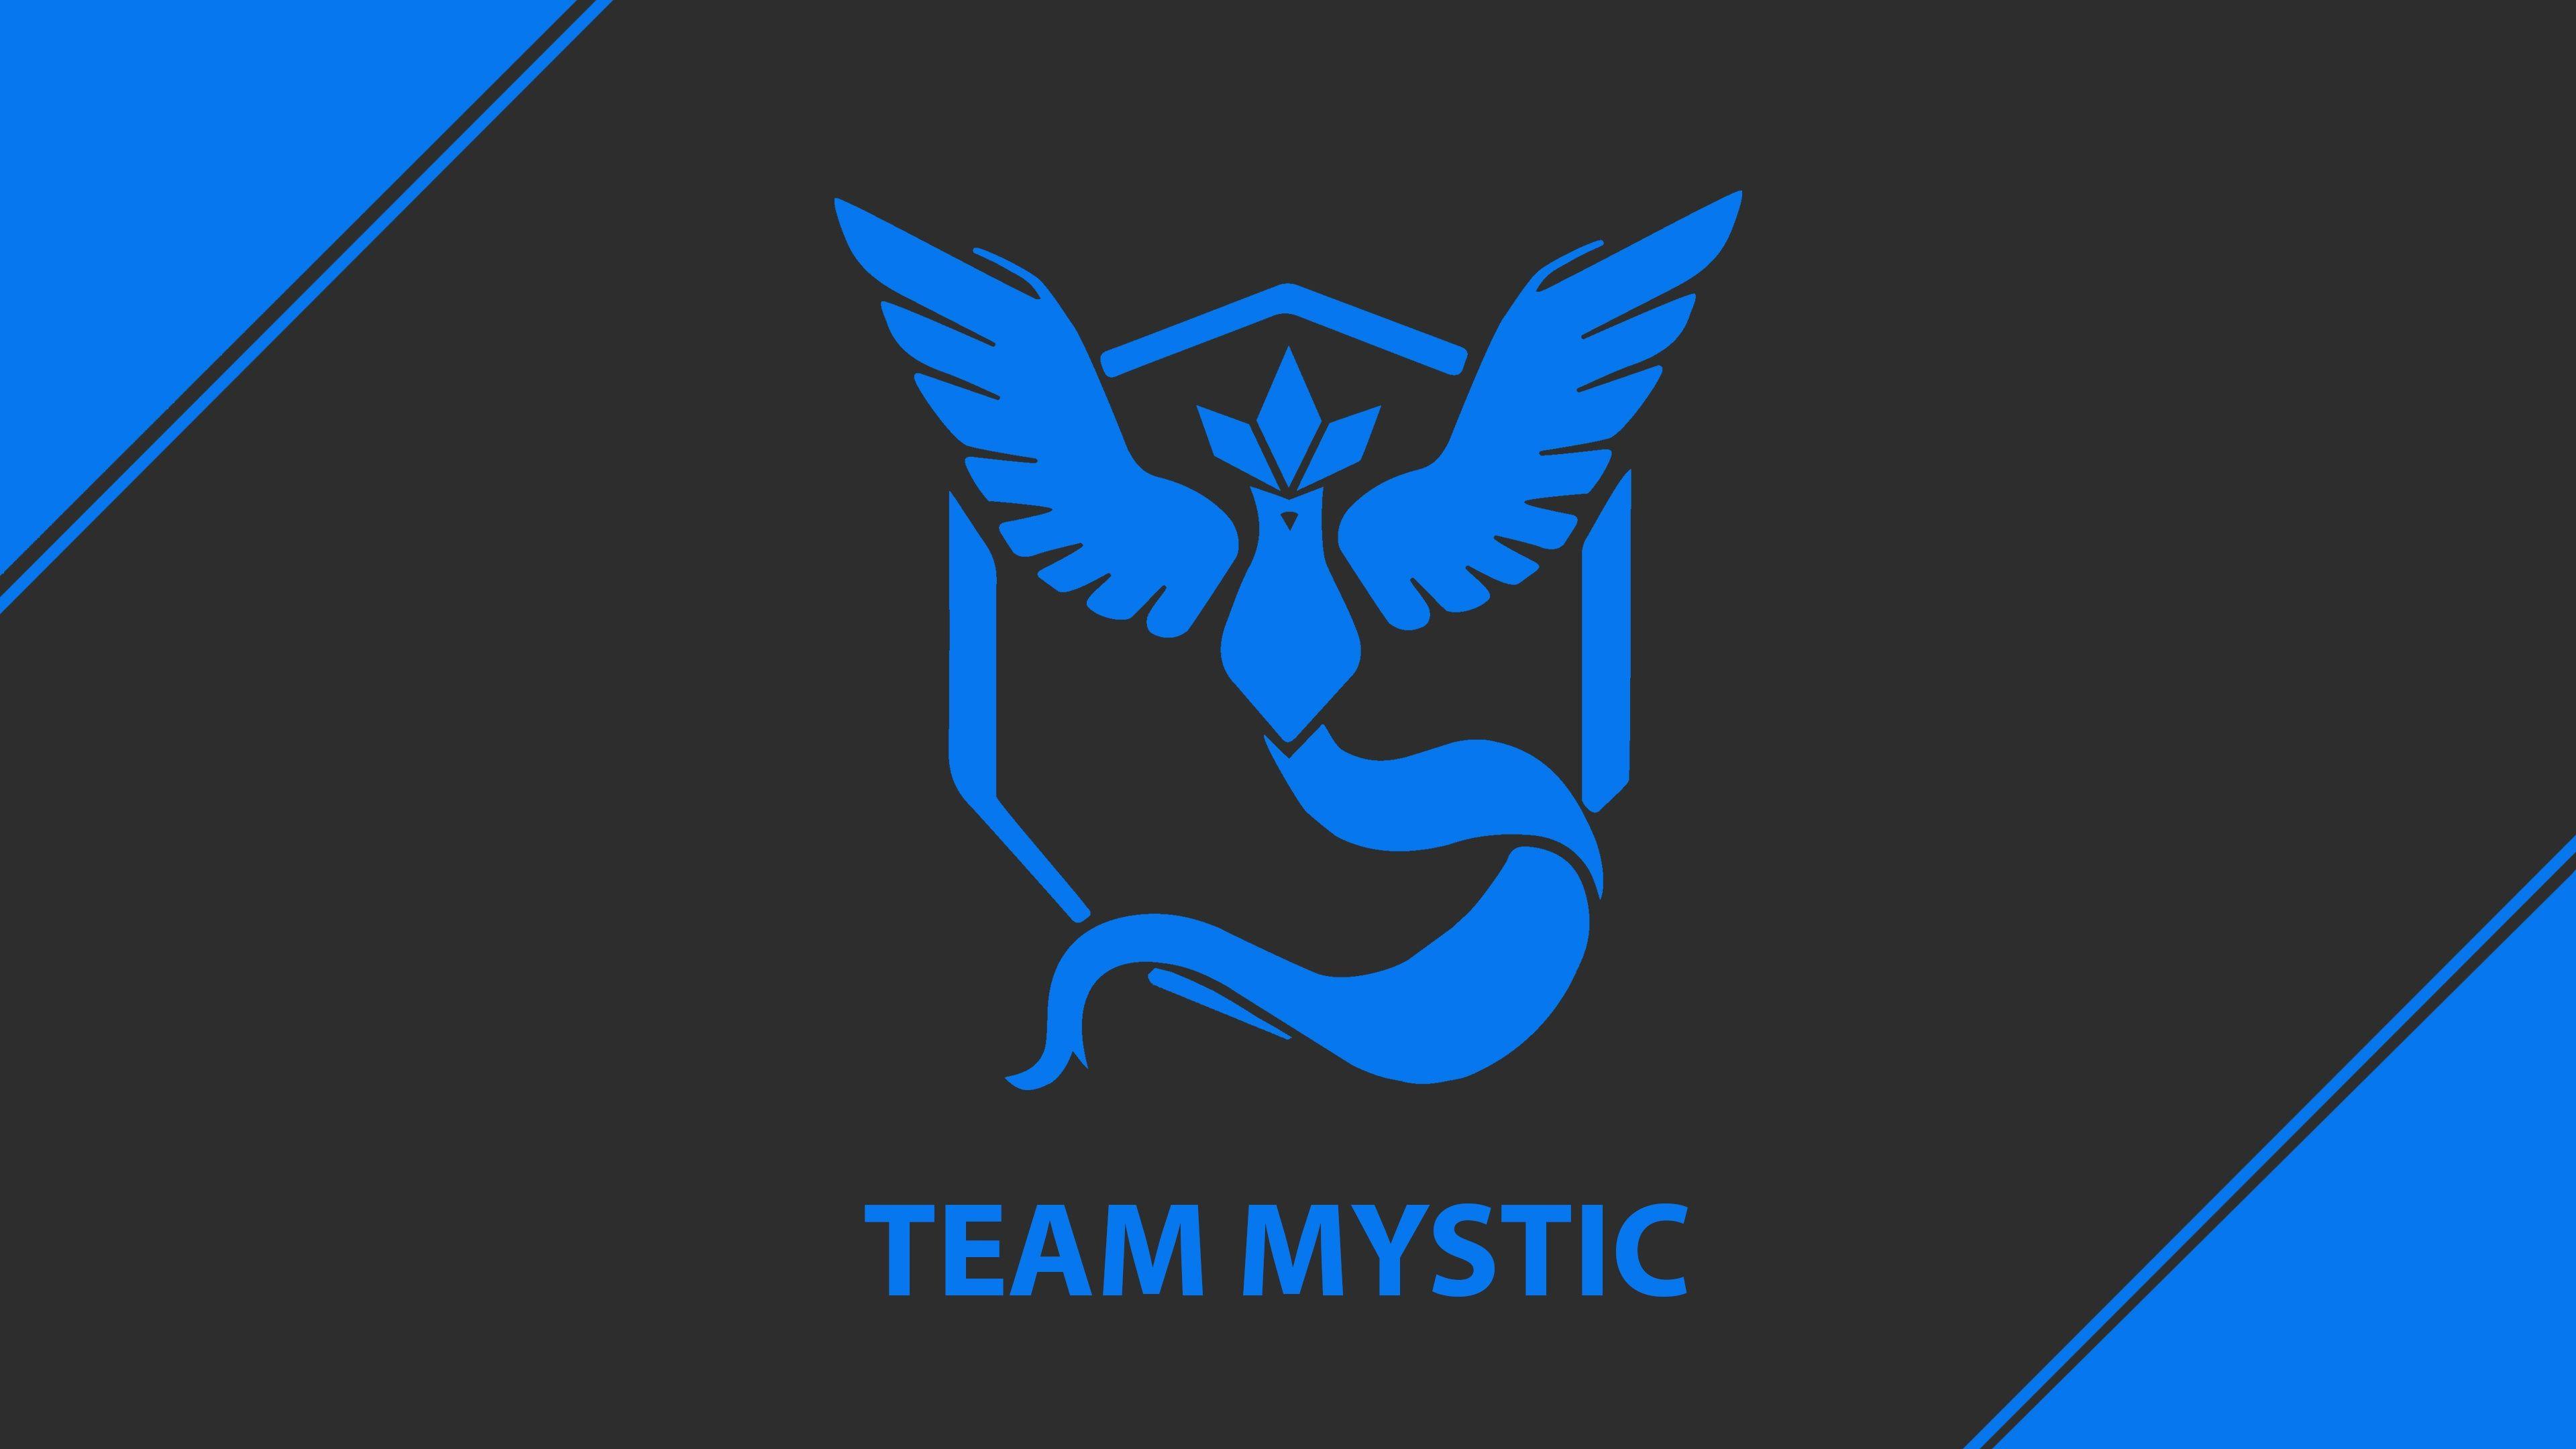 Pokemon Go Team Mystic Team Blue 4K Wallpaper in jpg format for free download